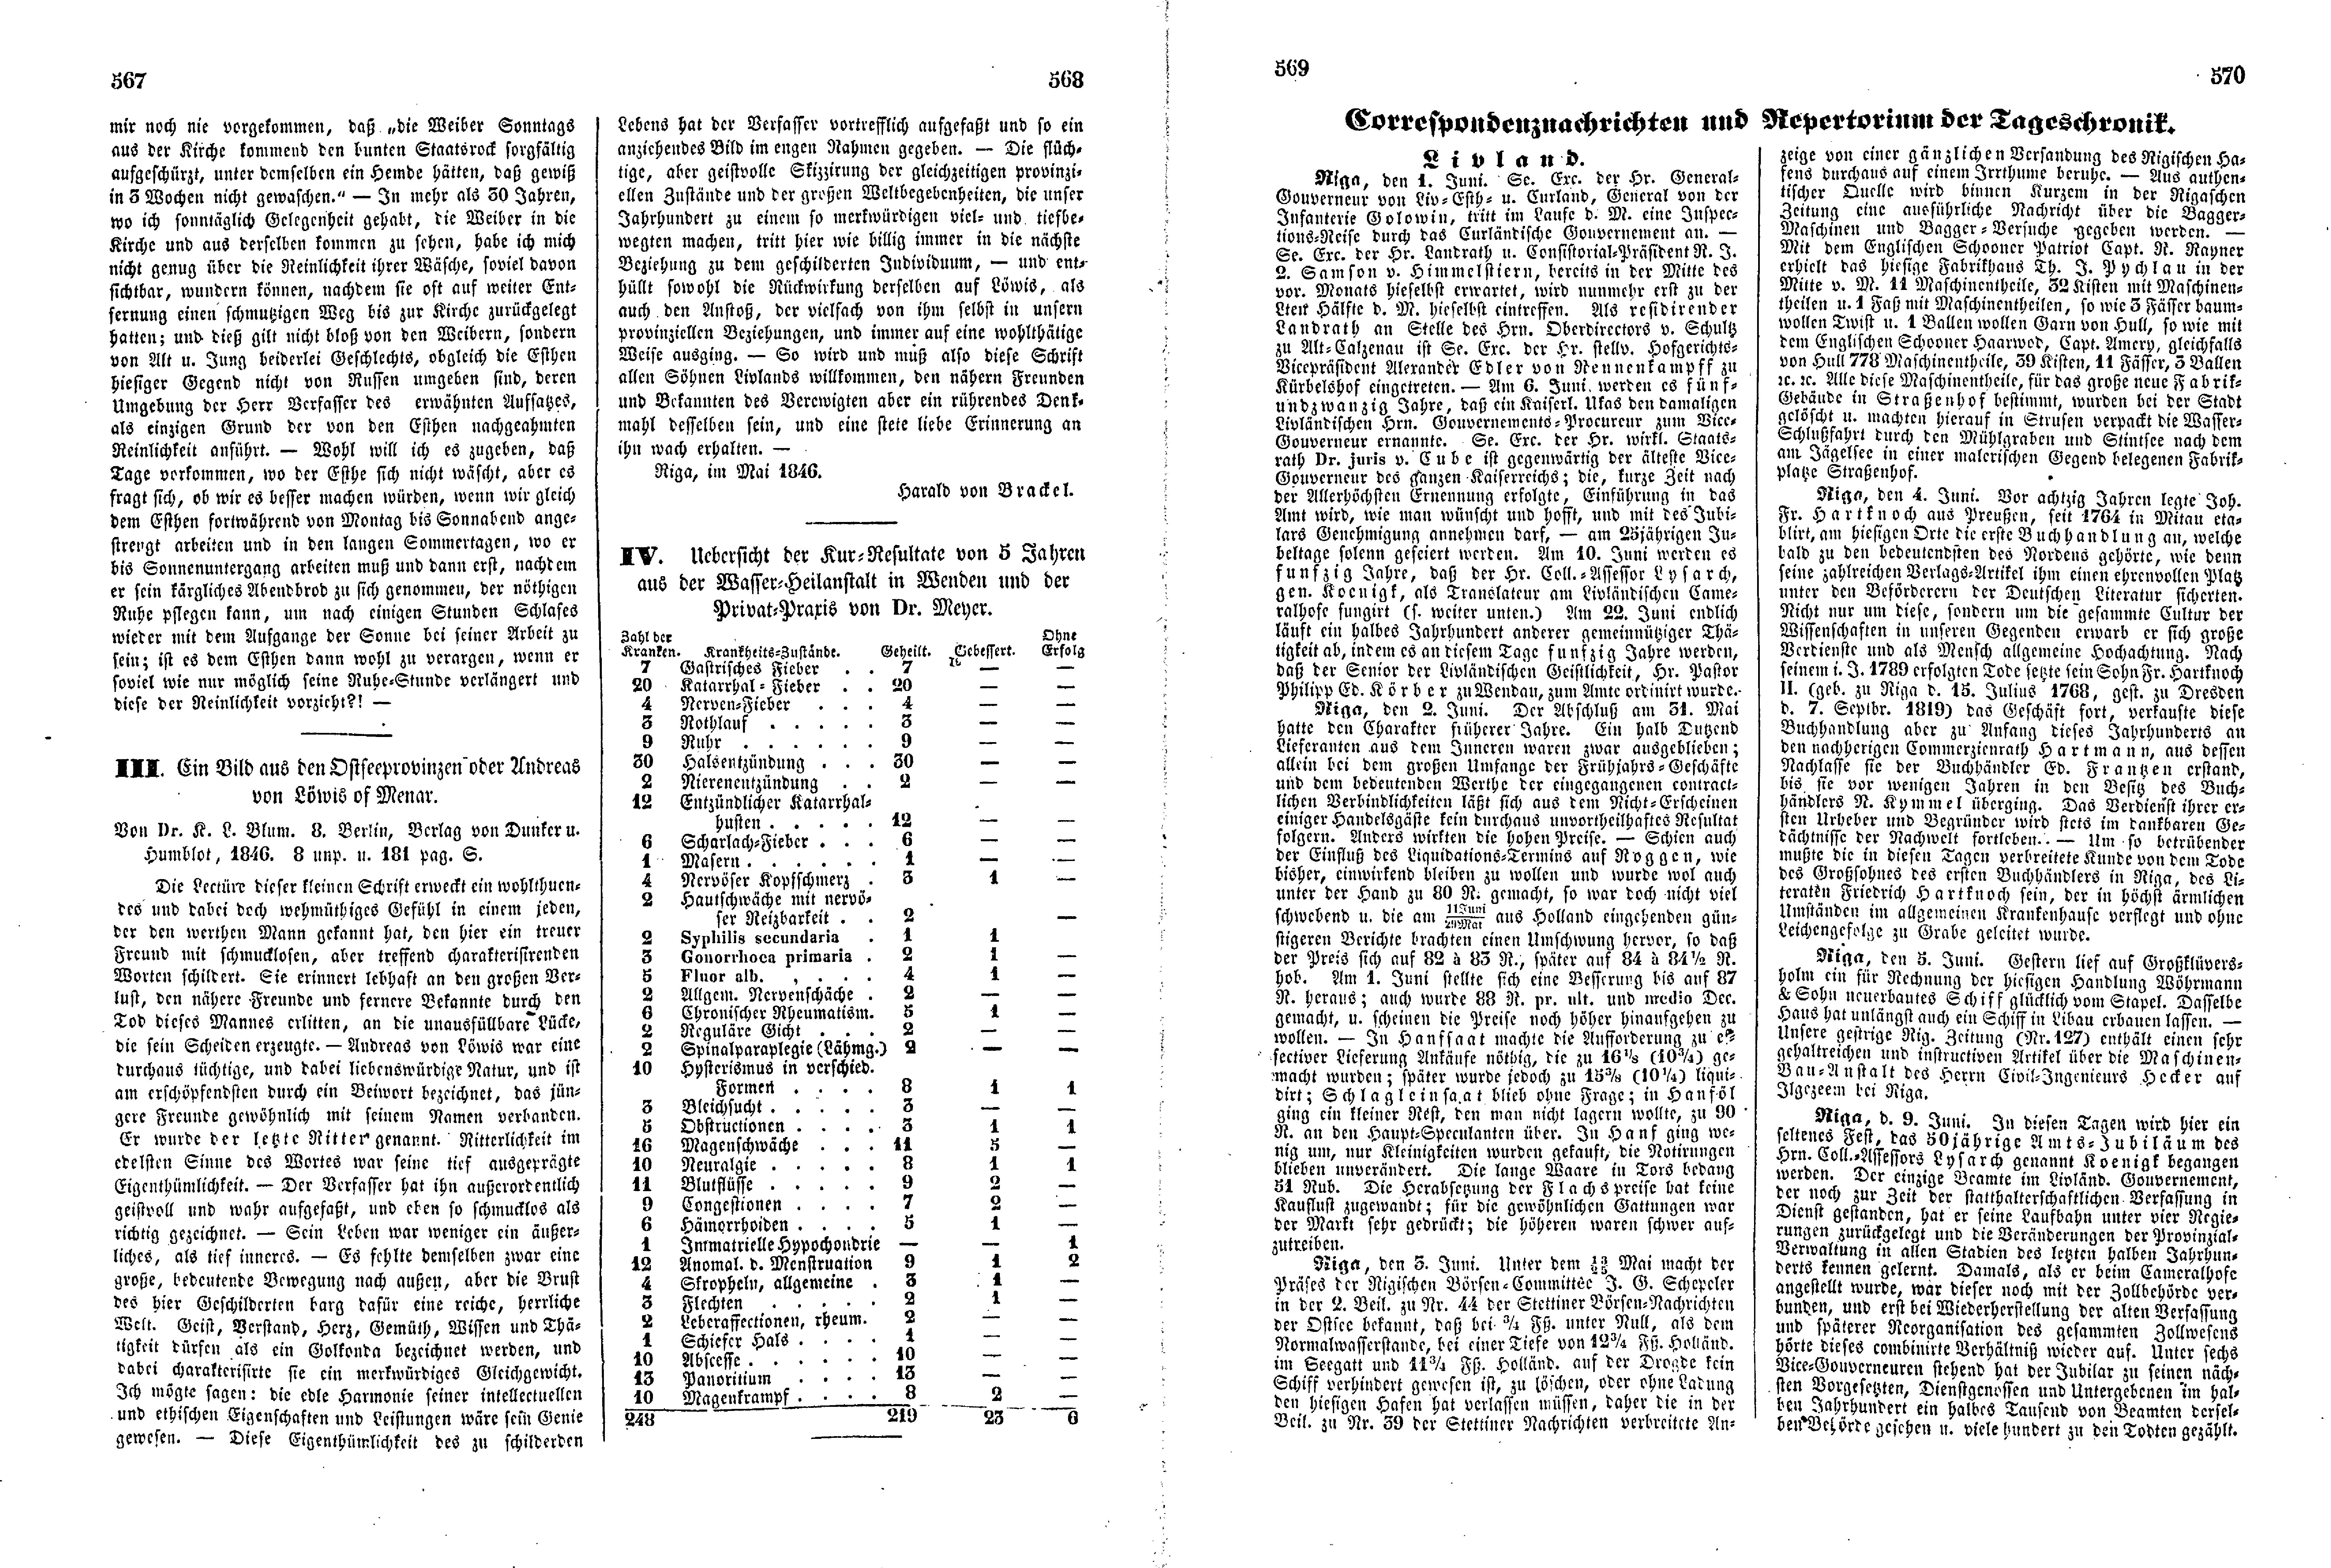 Das Inland [11] (1846) | 147. (567-570) Haupttext